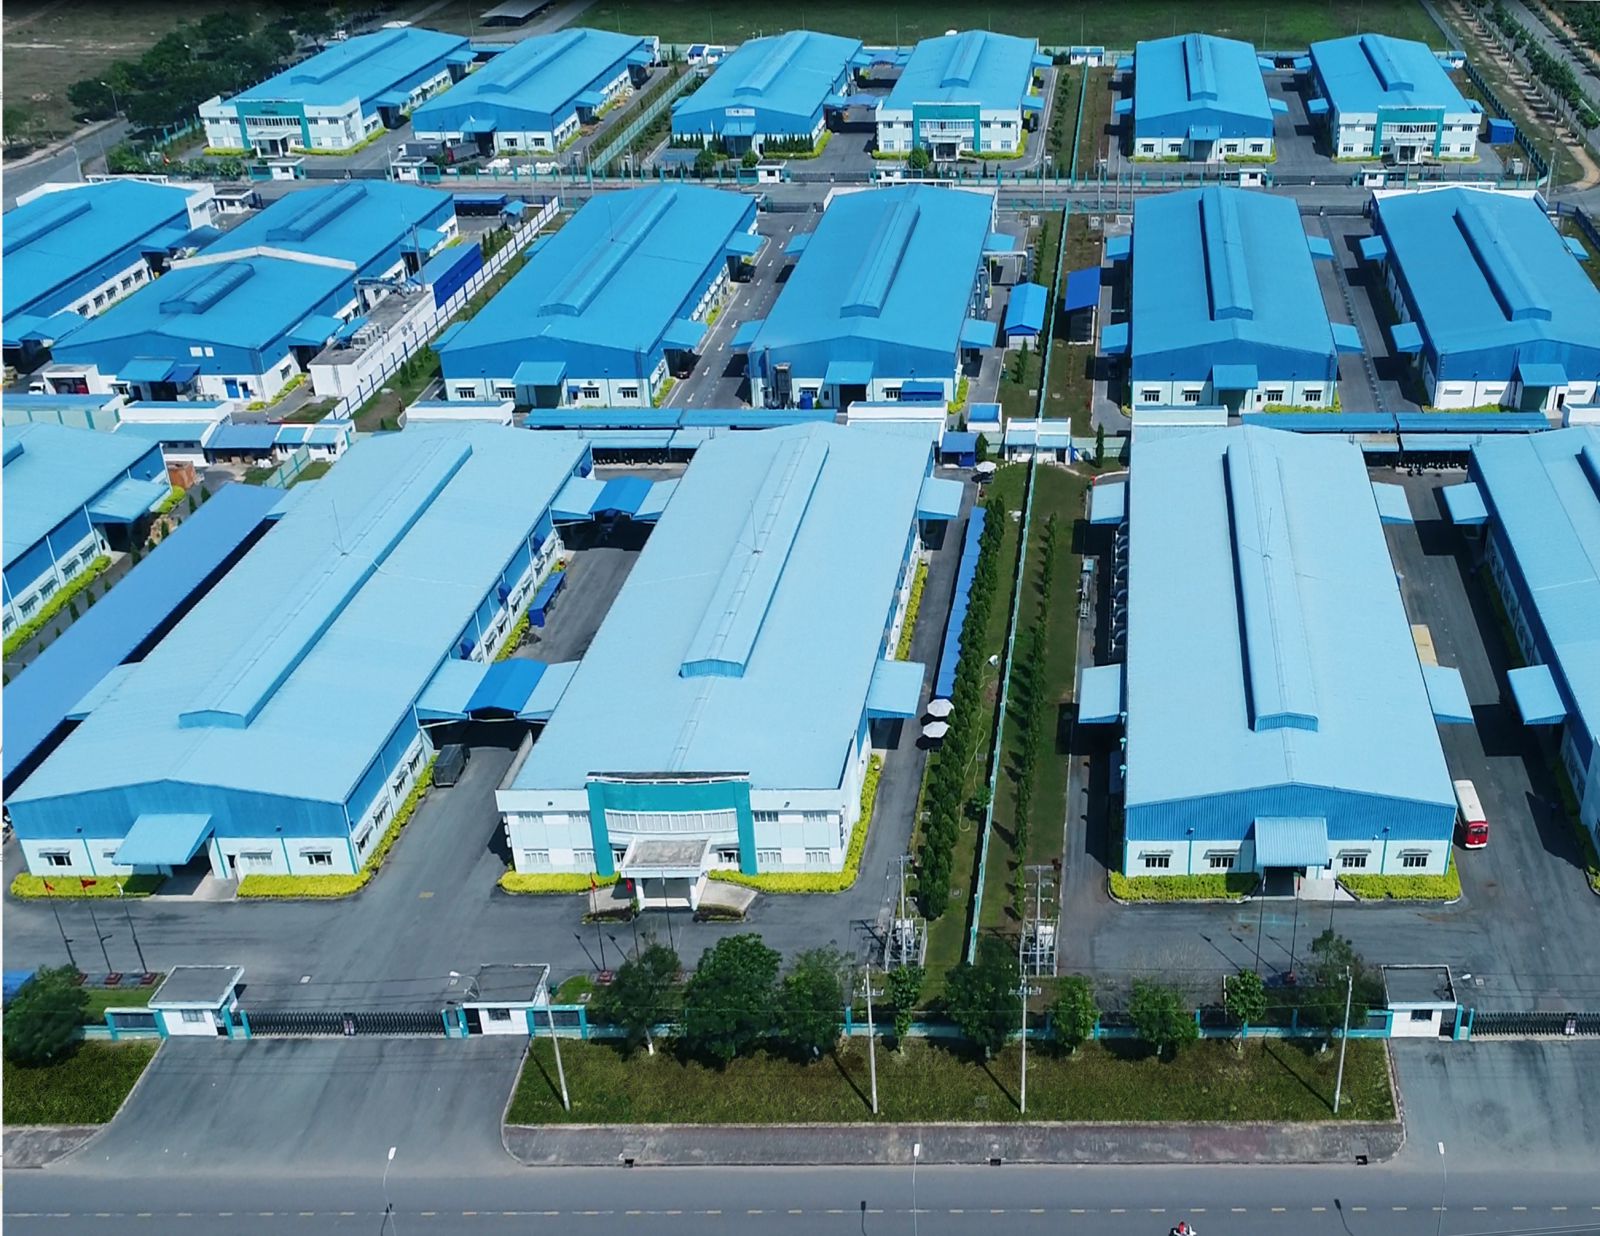 Sản phẩm nhà xưởng cho thuê tại các khu công nghiệp của Sonadezi hiện thu hút rất nhiều nhà đầu tư (trong hình: cụm nhà xưởng cho thuê tại Khu Công nghiệp Long Thành).